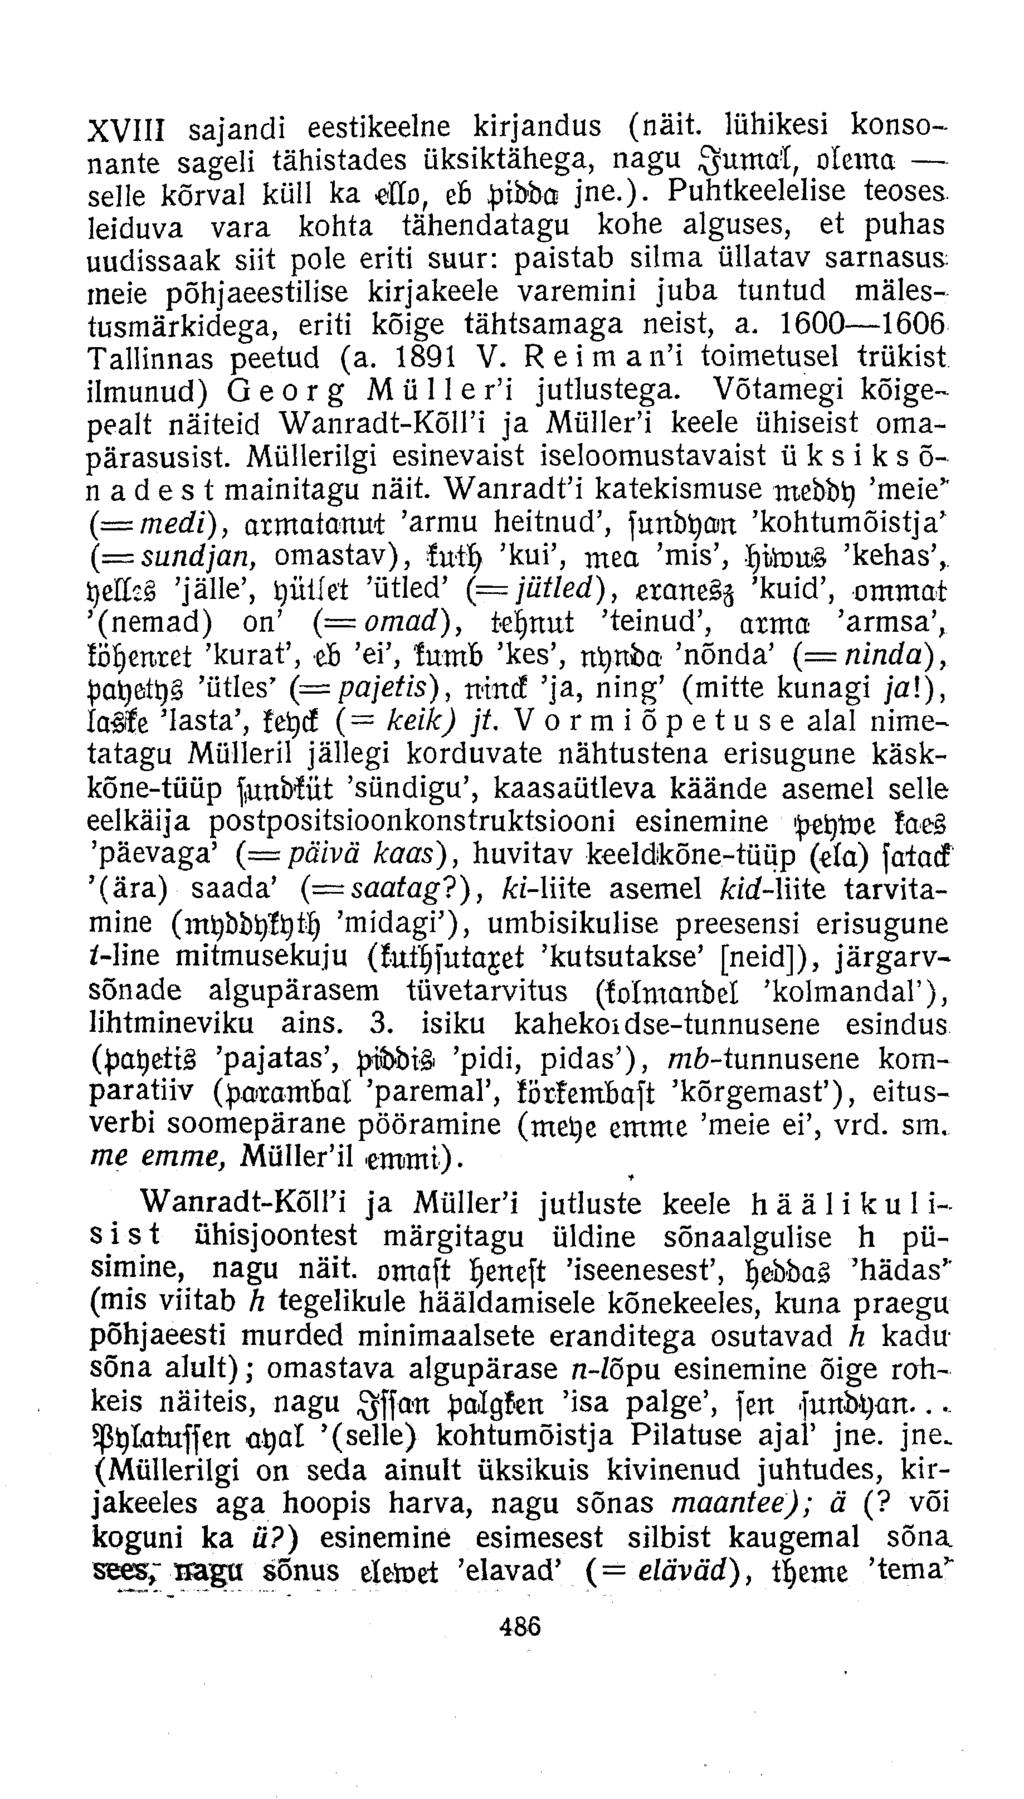 XVIII sajandi eestikeelne kirjandus (näit. lühikesi konsonante sageli tähistades üksiktähega, nagu IumÄ, olema selle kõrval küll ka Ho, eb pidda jne.